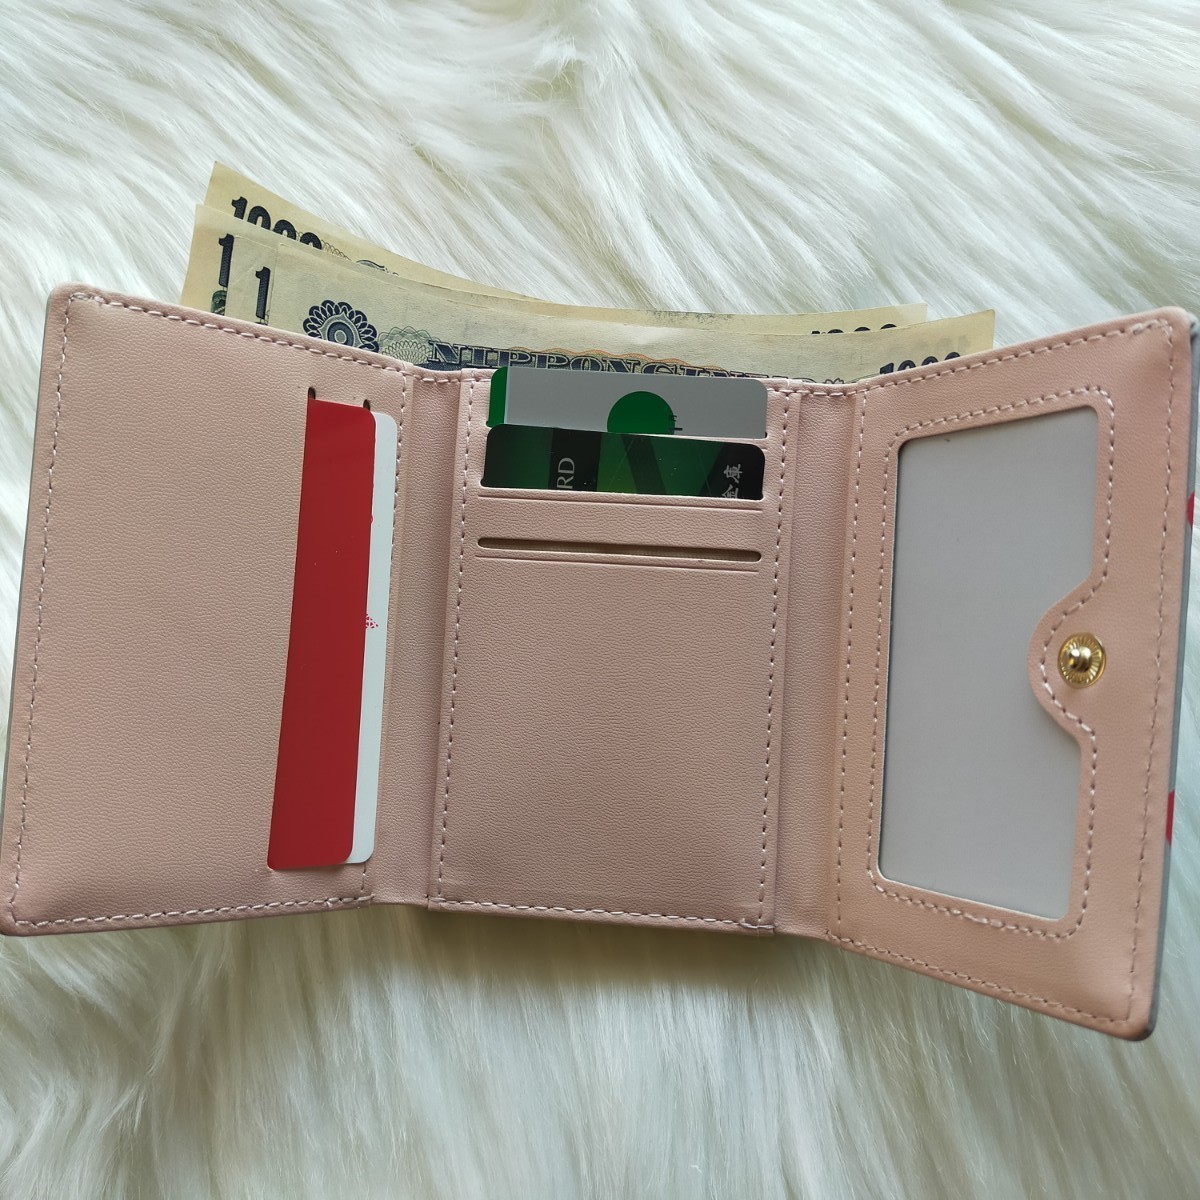 ミニ財布 がま口 財布 三つ折財布 小銭入れ コインケース カード入れ